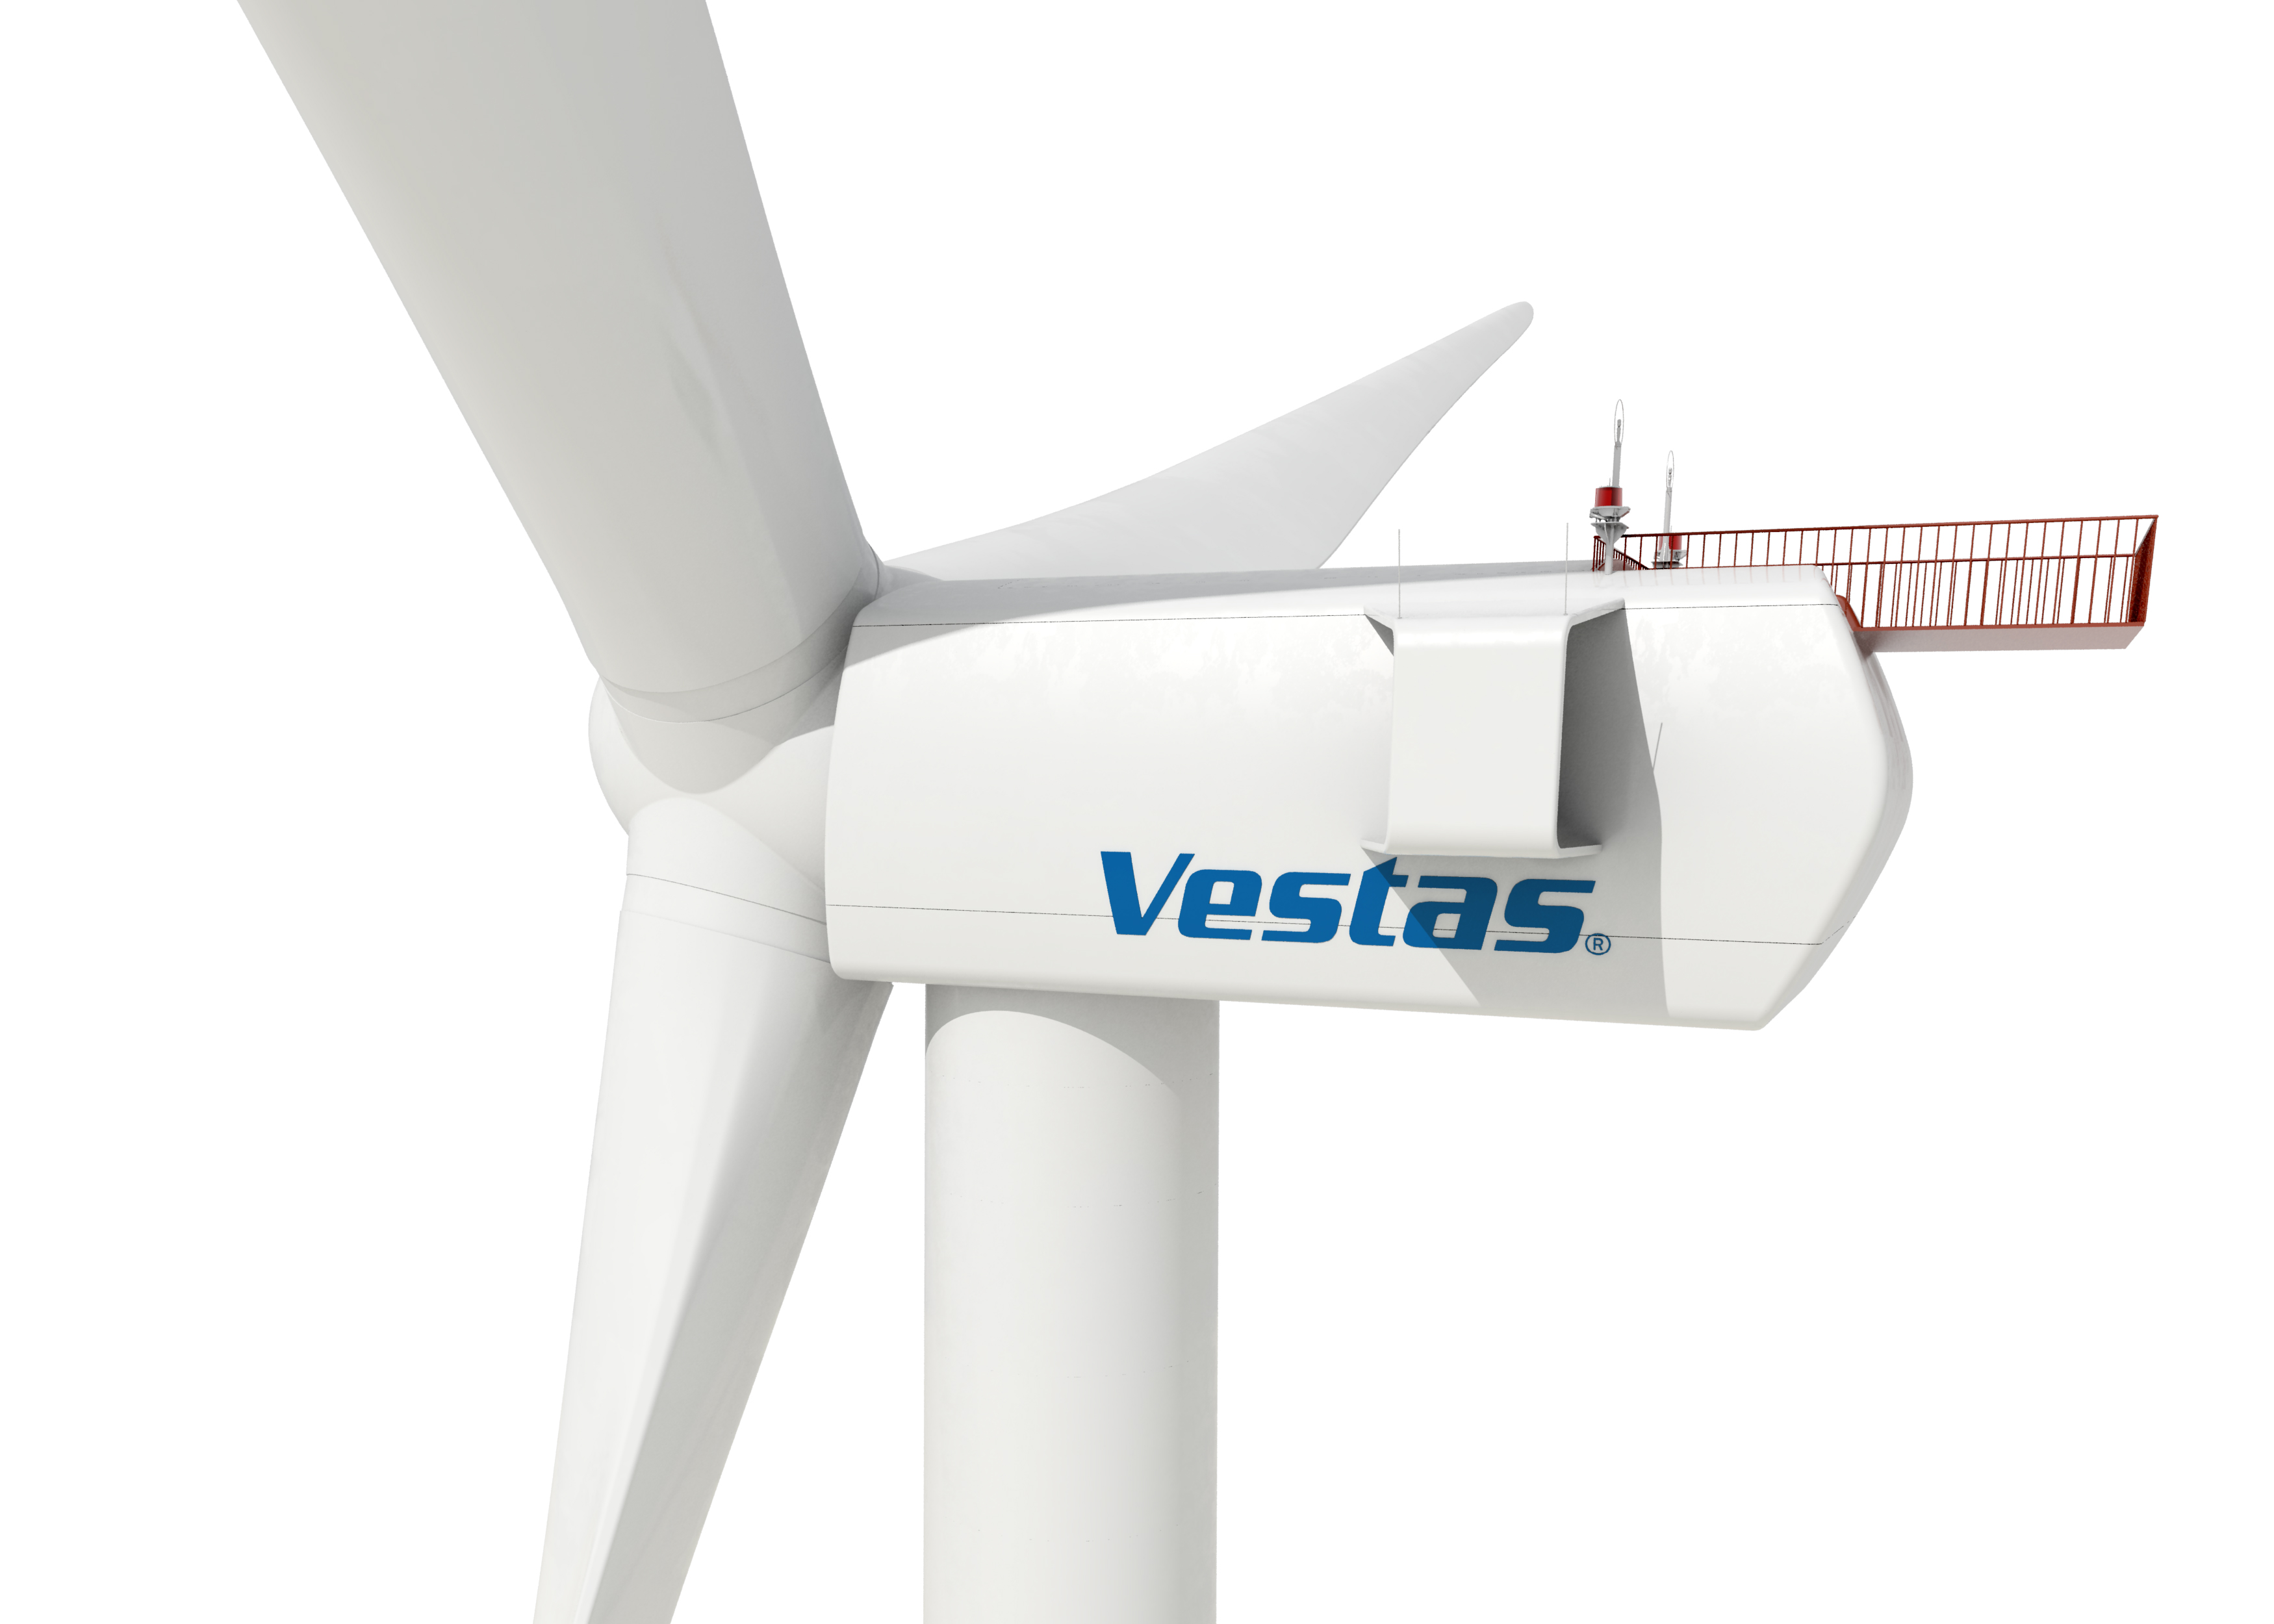 Vestas suministra aerogeneradores de eólica por 198 MW para el parque eólico más grande de Rusia